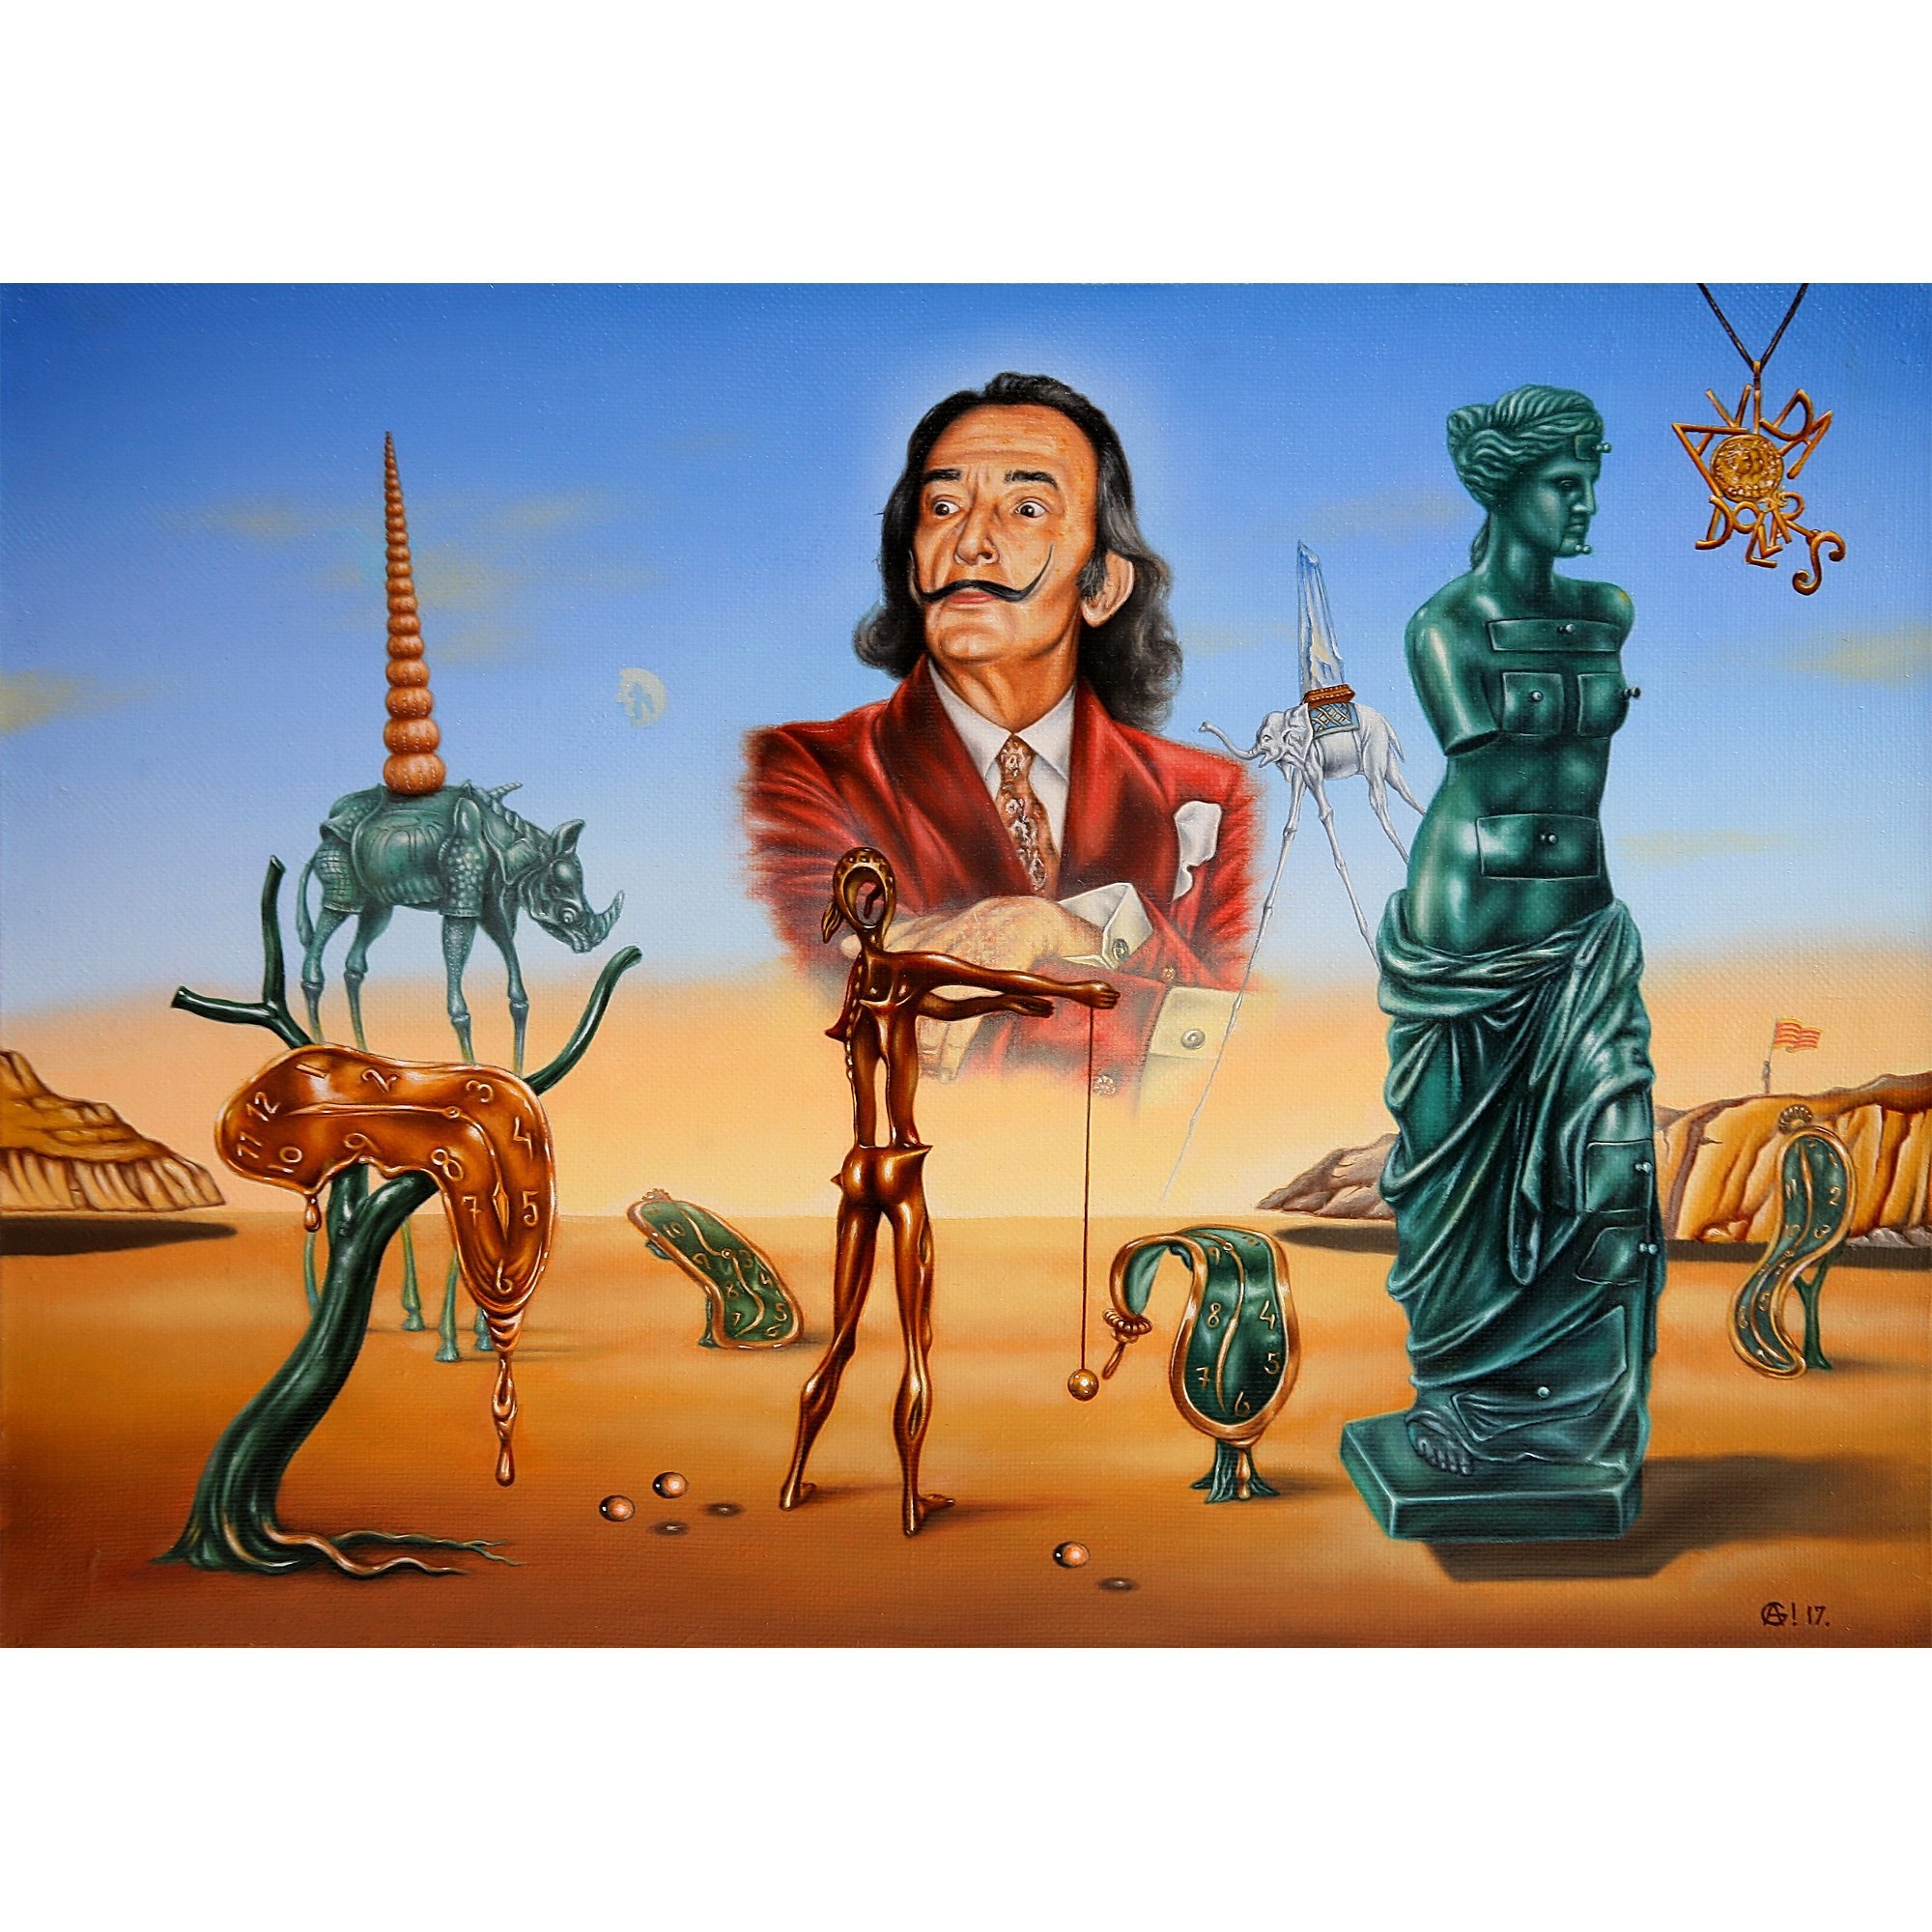 Папе дали купить. Salvador Dali картины. Salvador Dalí картины. Сальвадор дали картины самые известные. Dali Salvador Сальвадор дали картины.